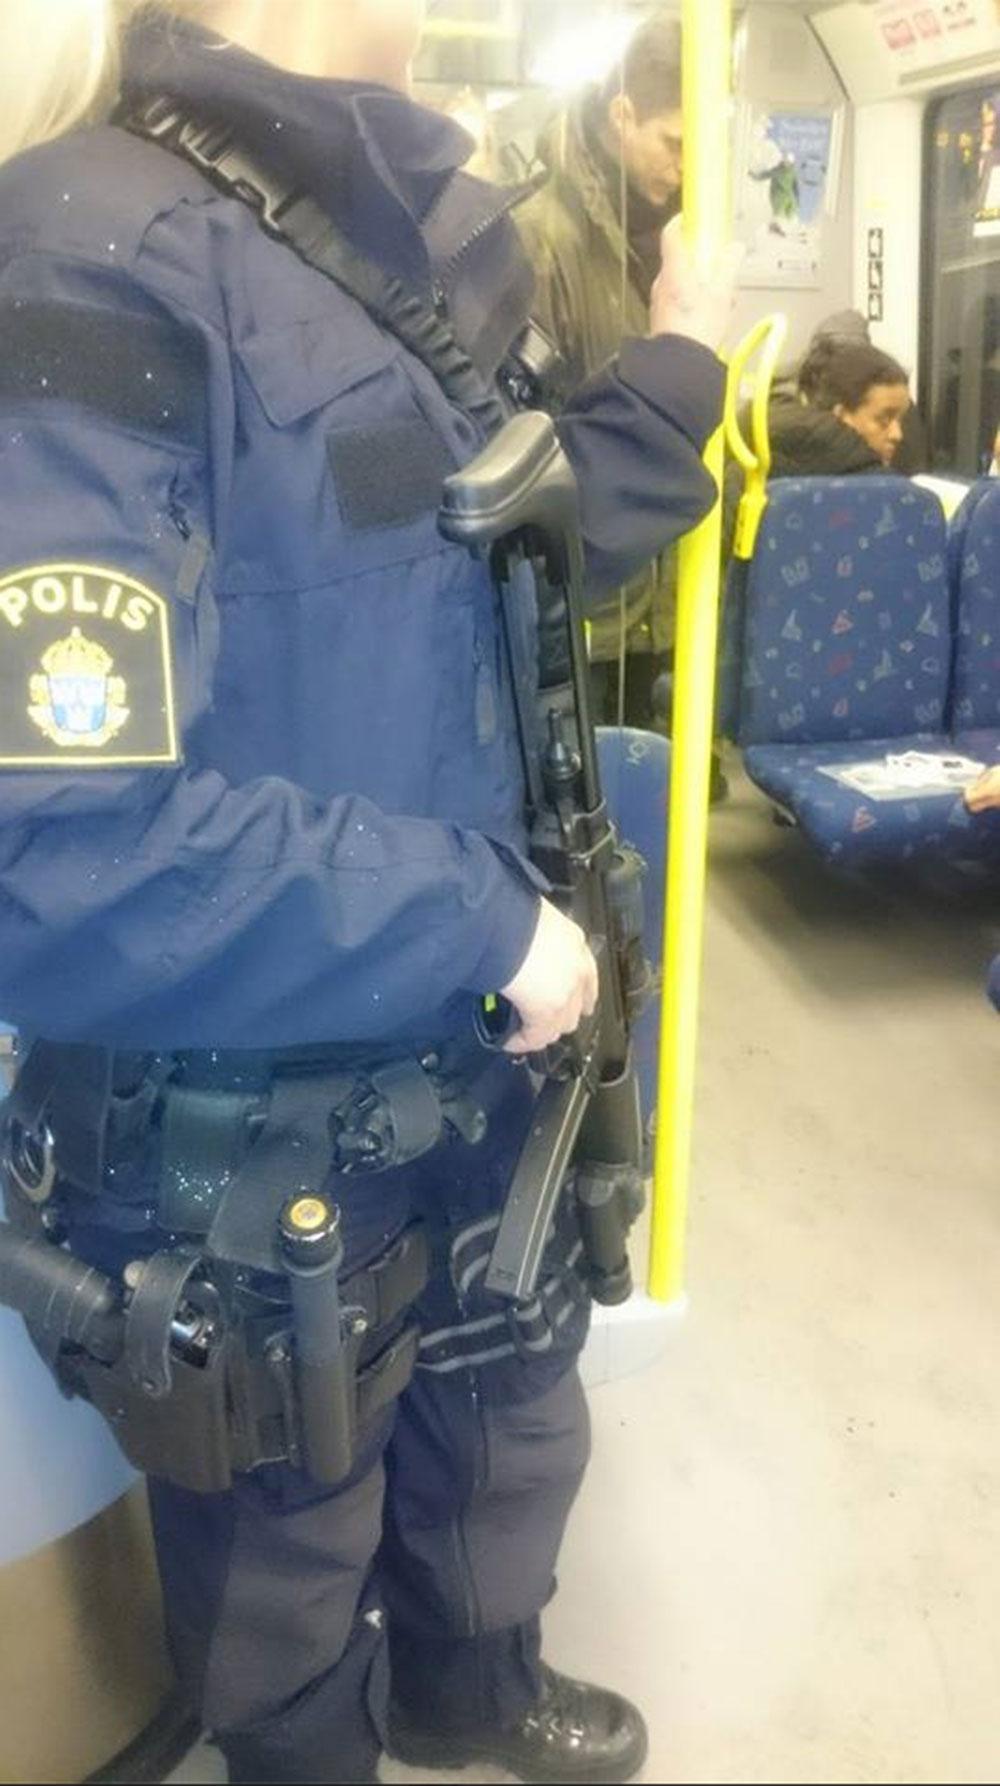 Polis i tunnelbanan med förstärkningsvapen.